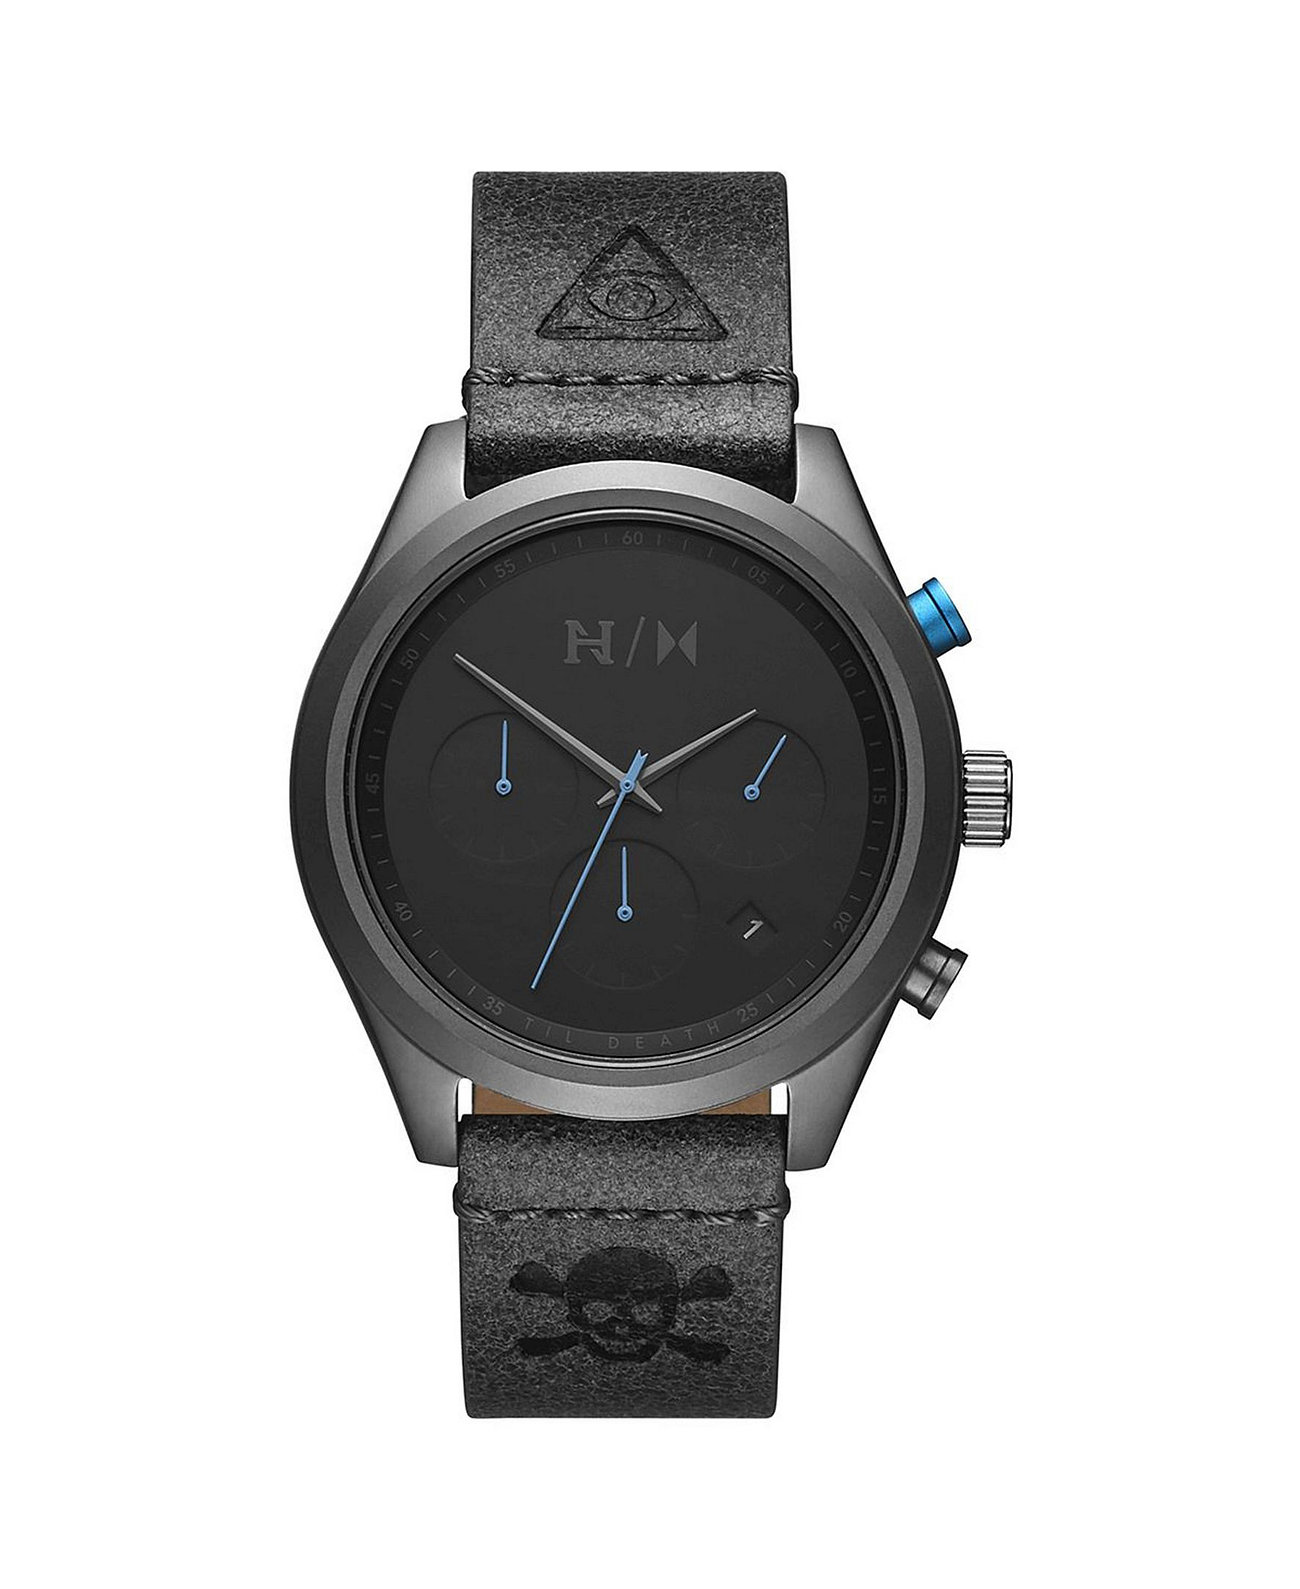 Мужские часы Nyjah Edition с серым кожаным ремешком 41 мм MVMT